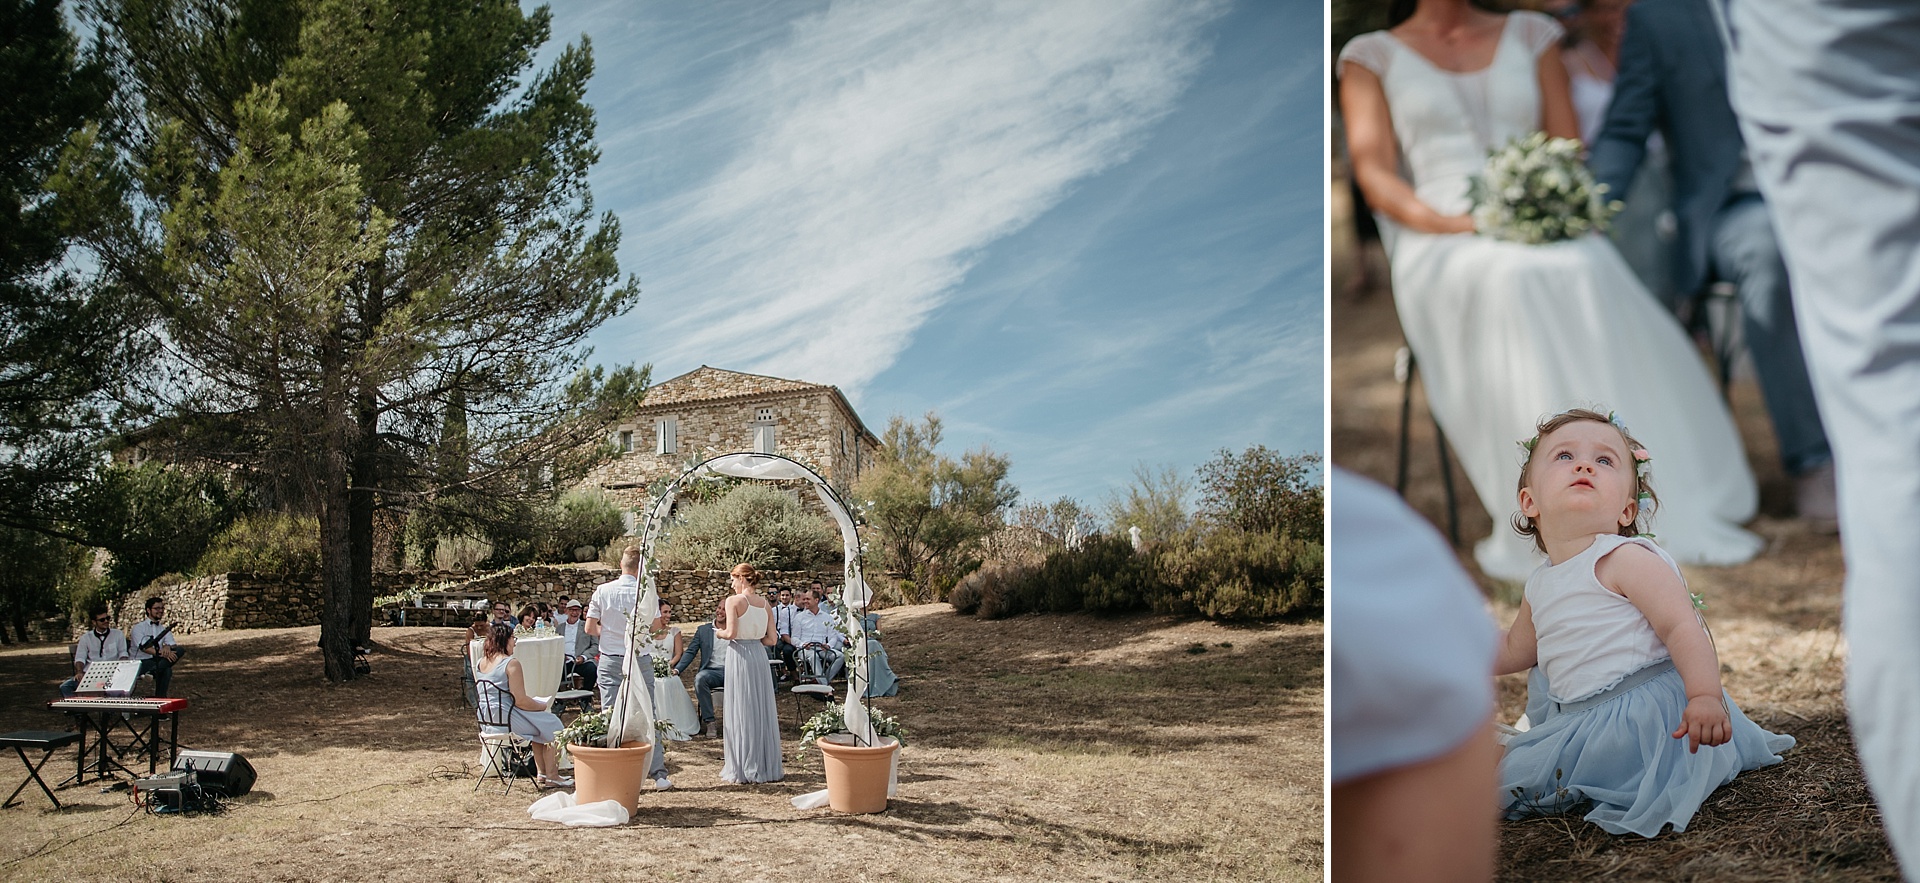 Traumhafte Hochzeit in der Provence.